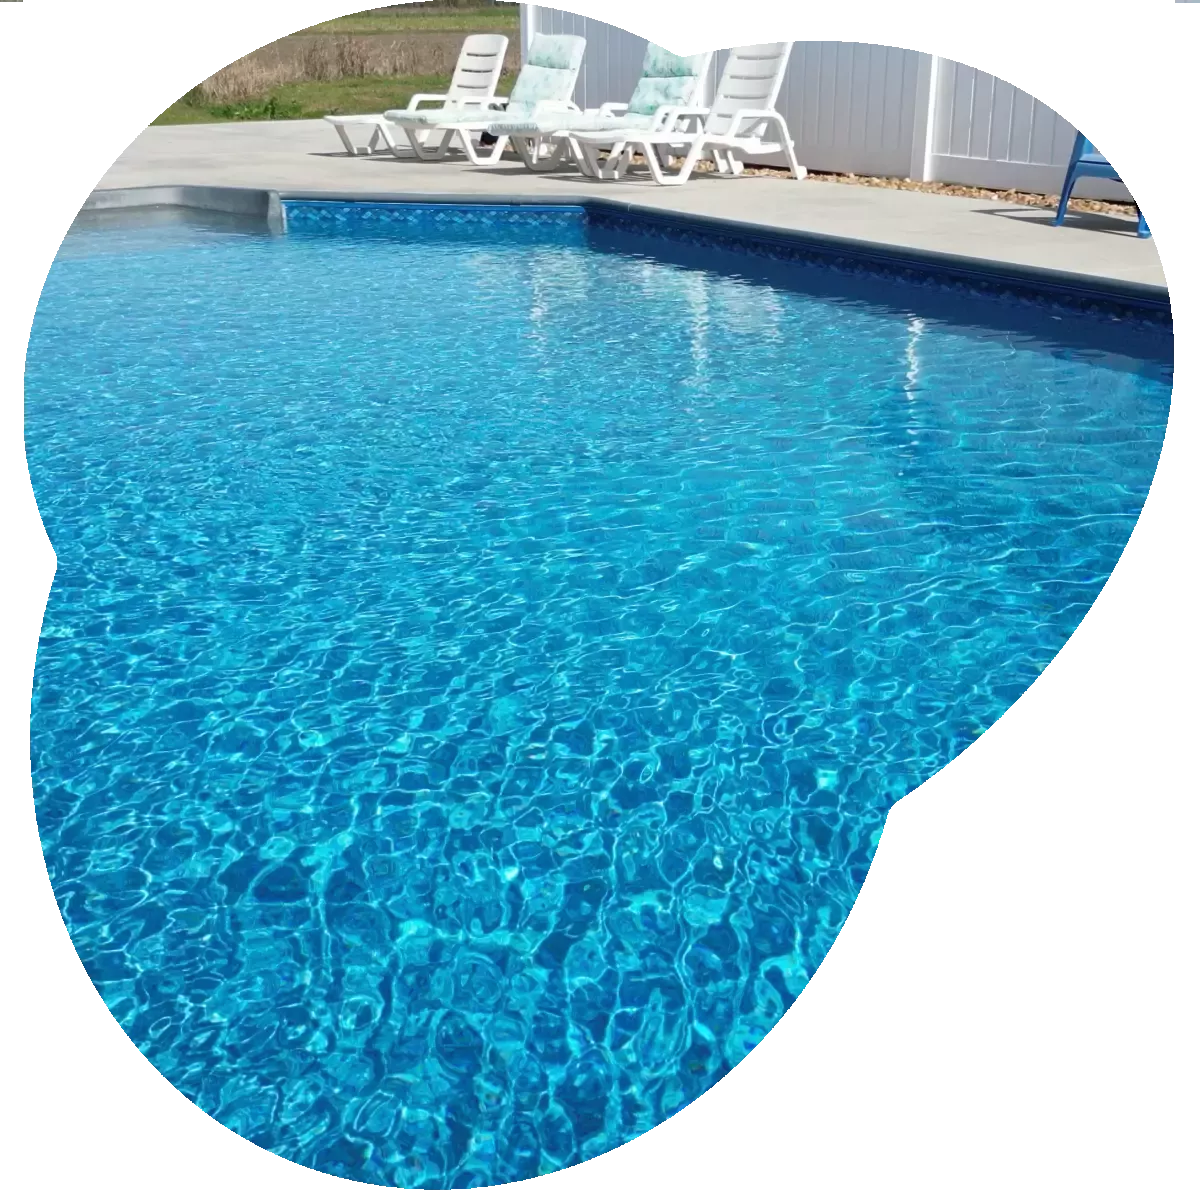 A vinyl pool.